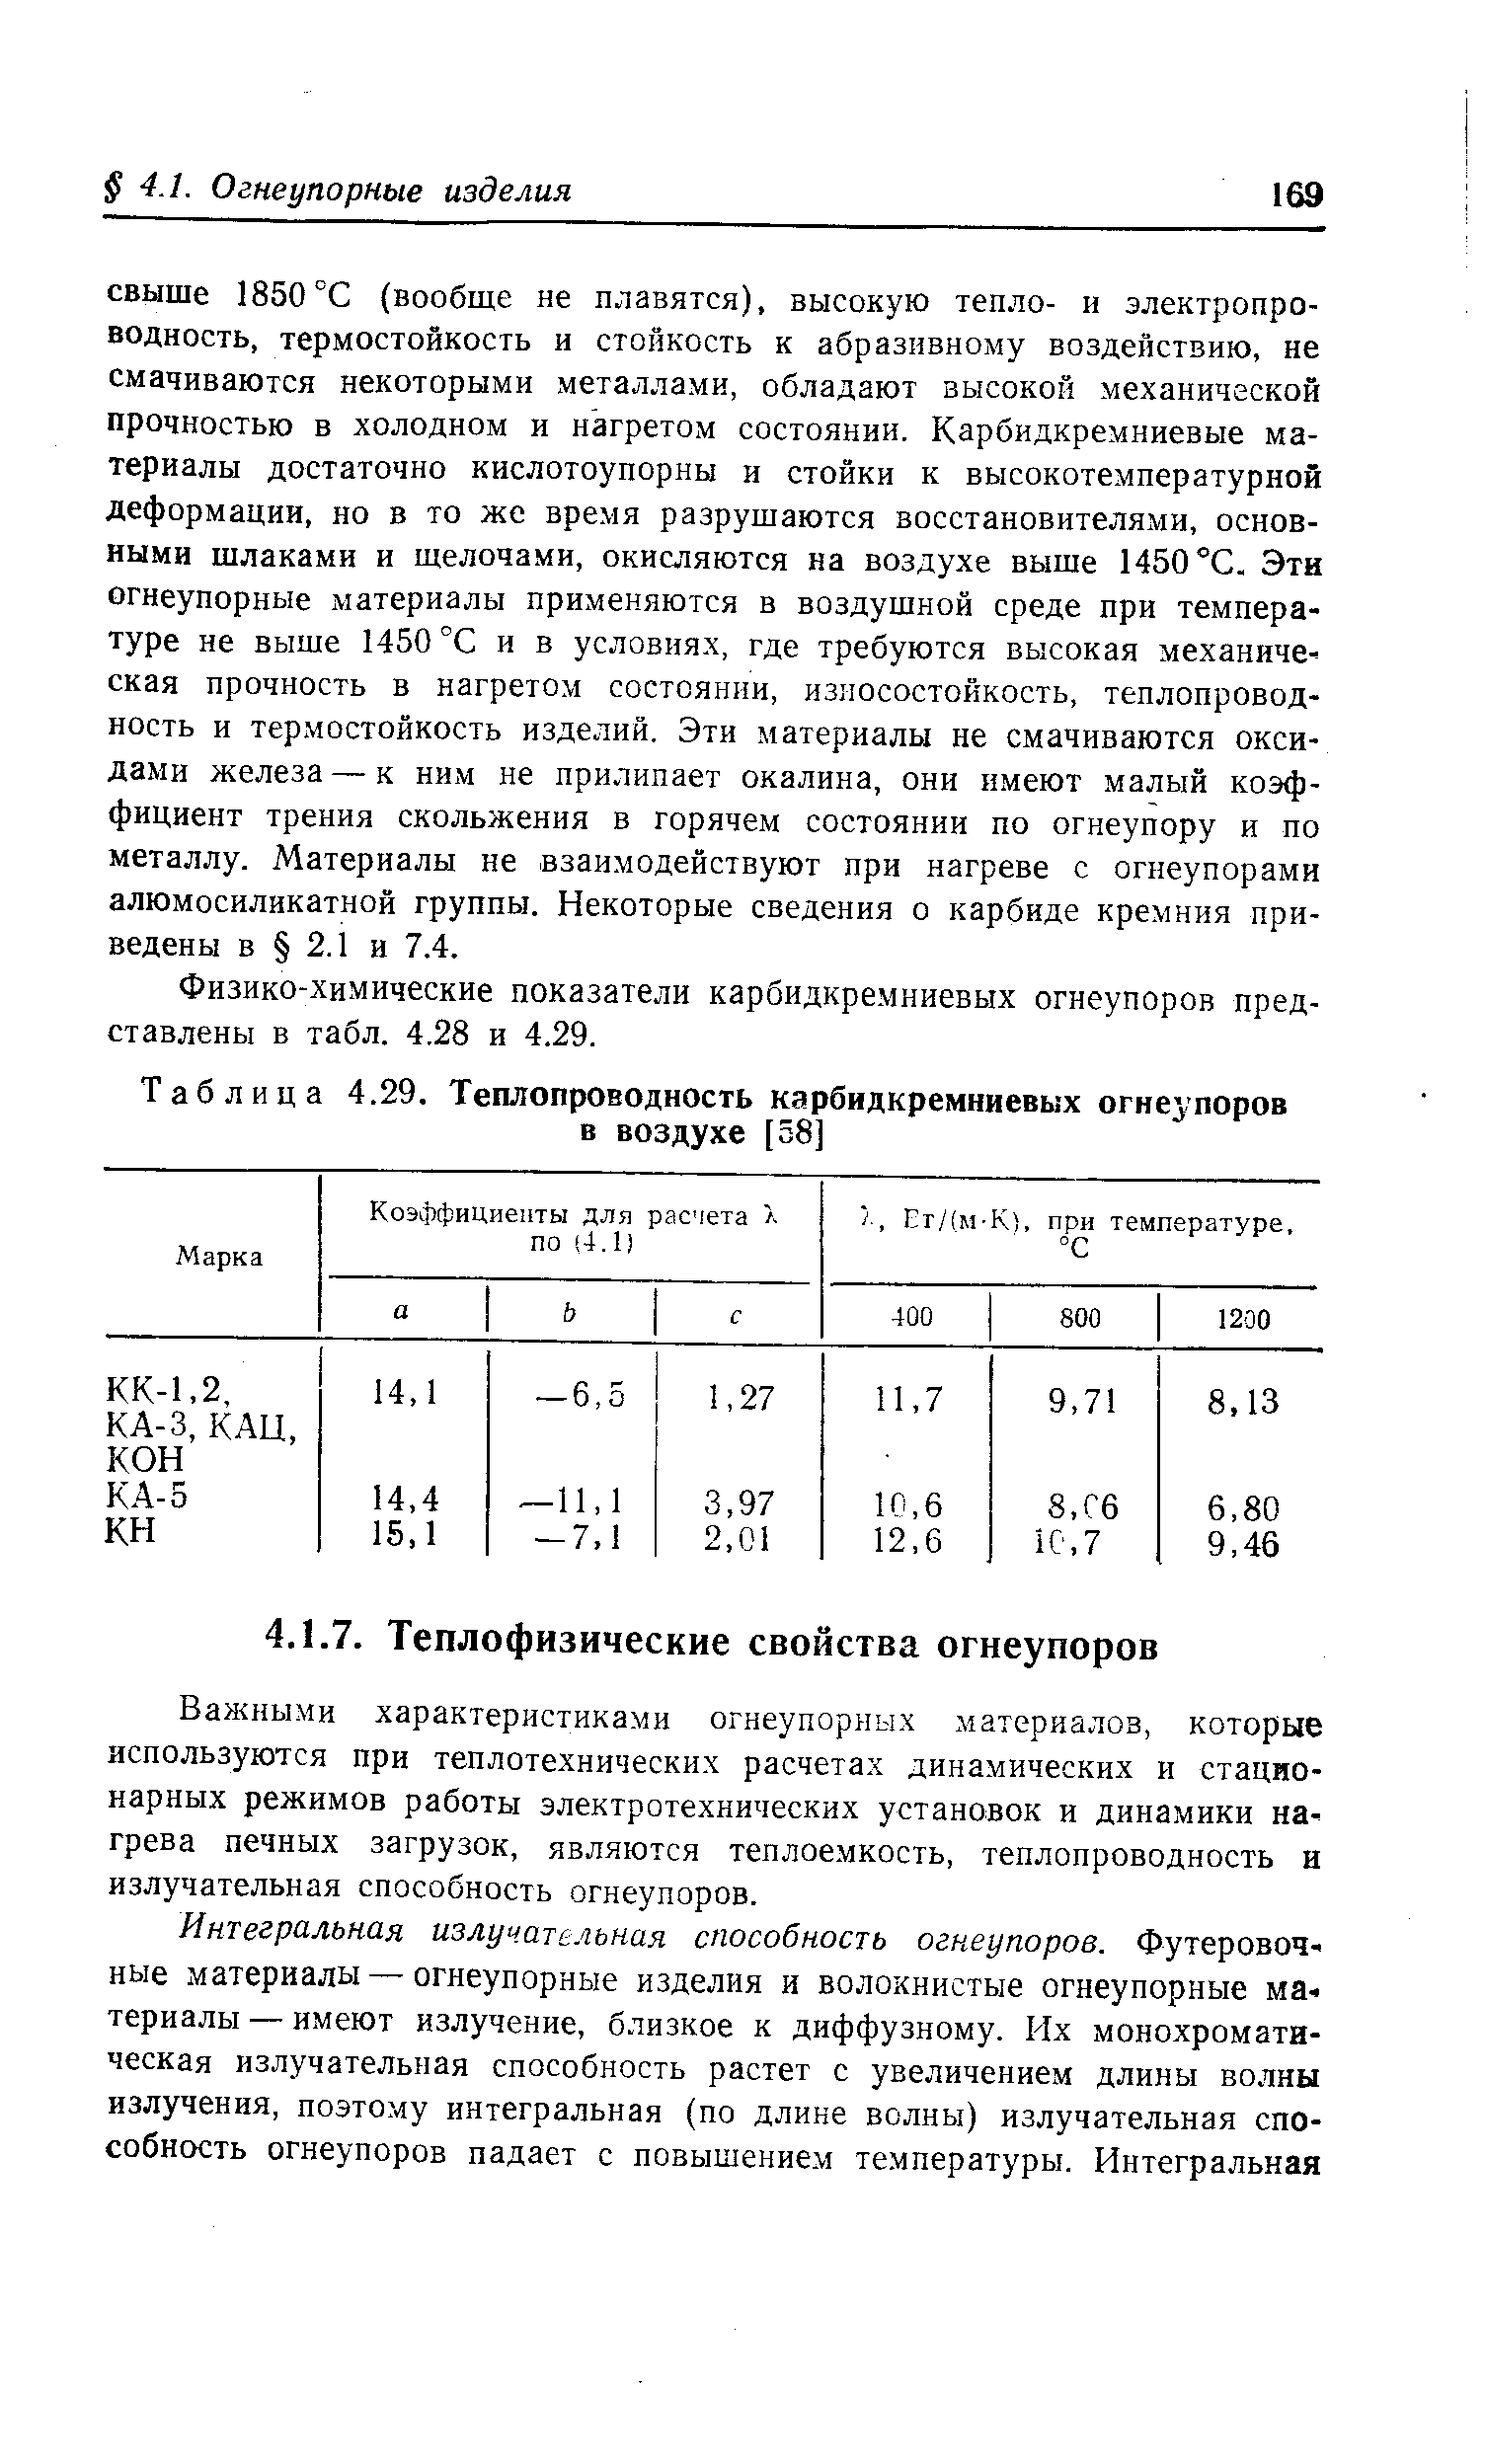 Физико-химические показатели карбидкремниевых огнеупоров представлены в табл. 4.28 и 4.29.
